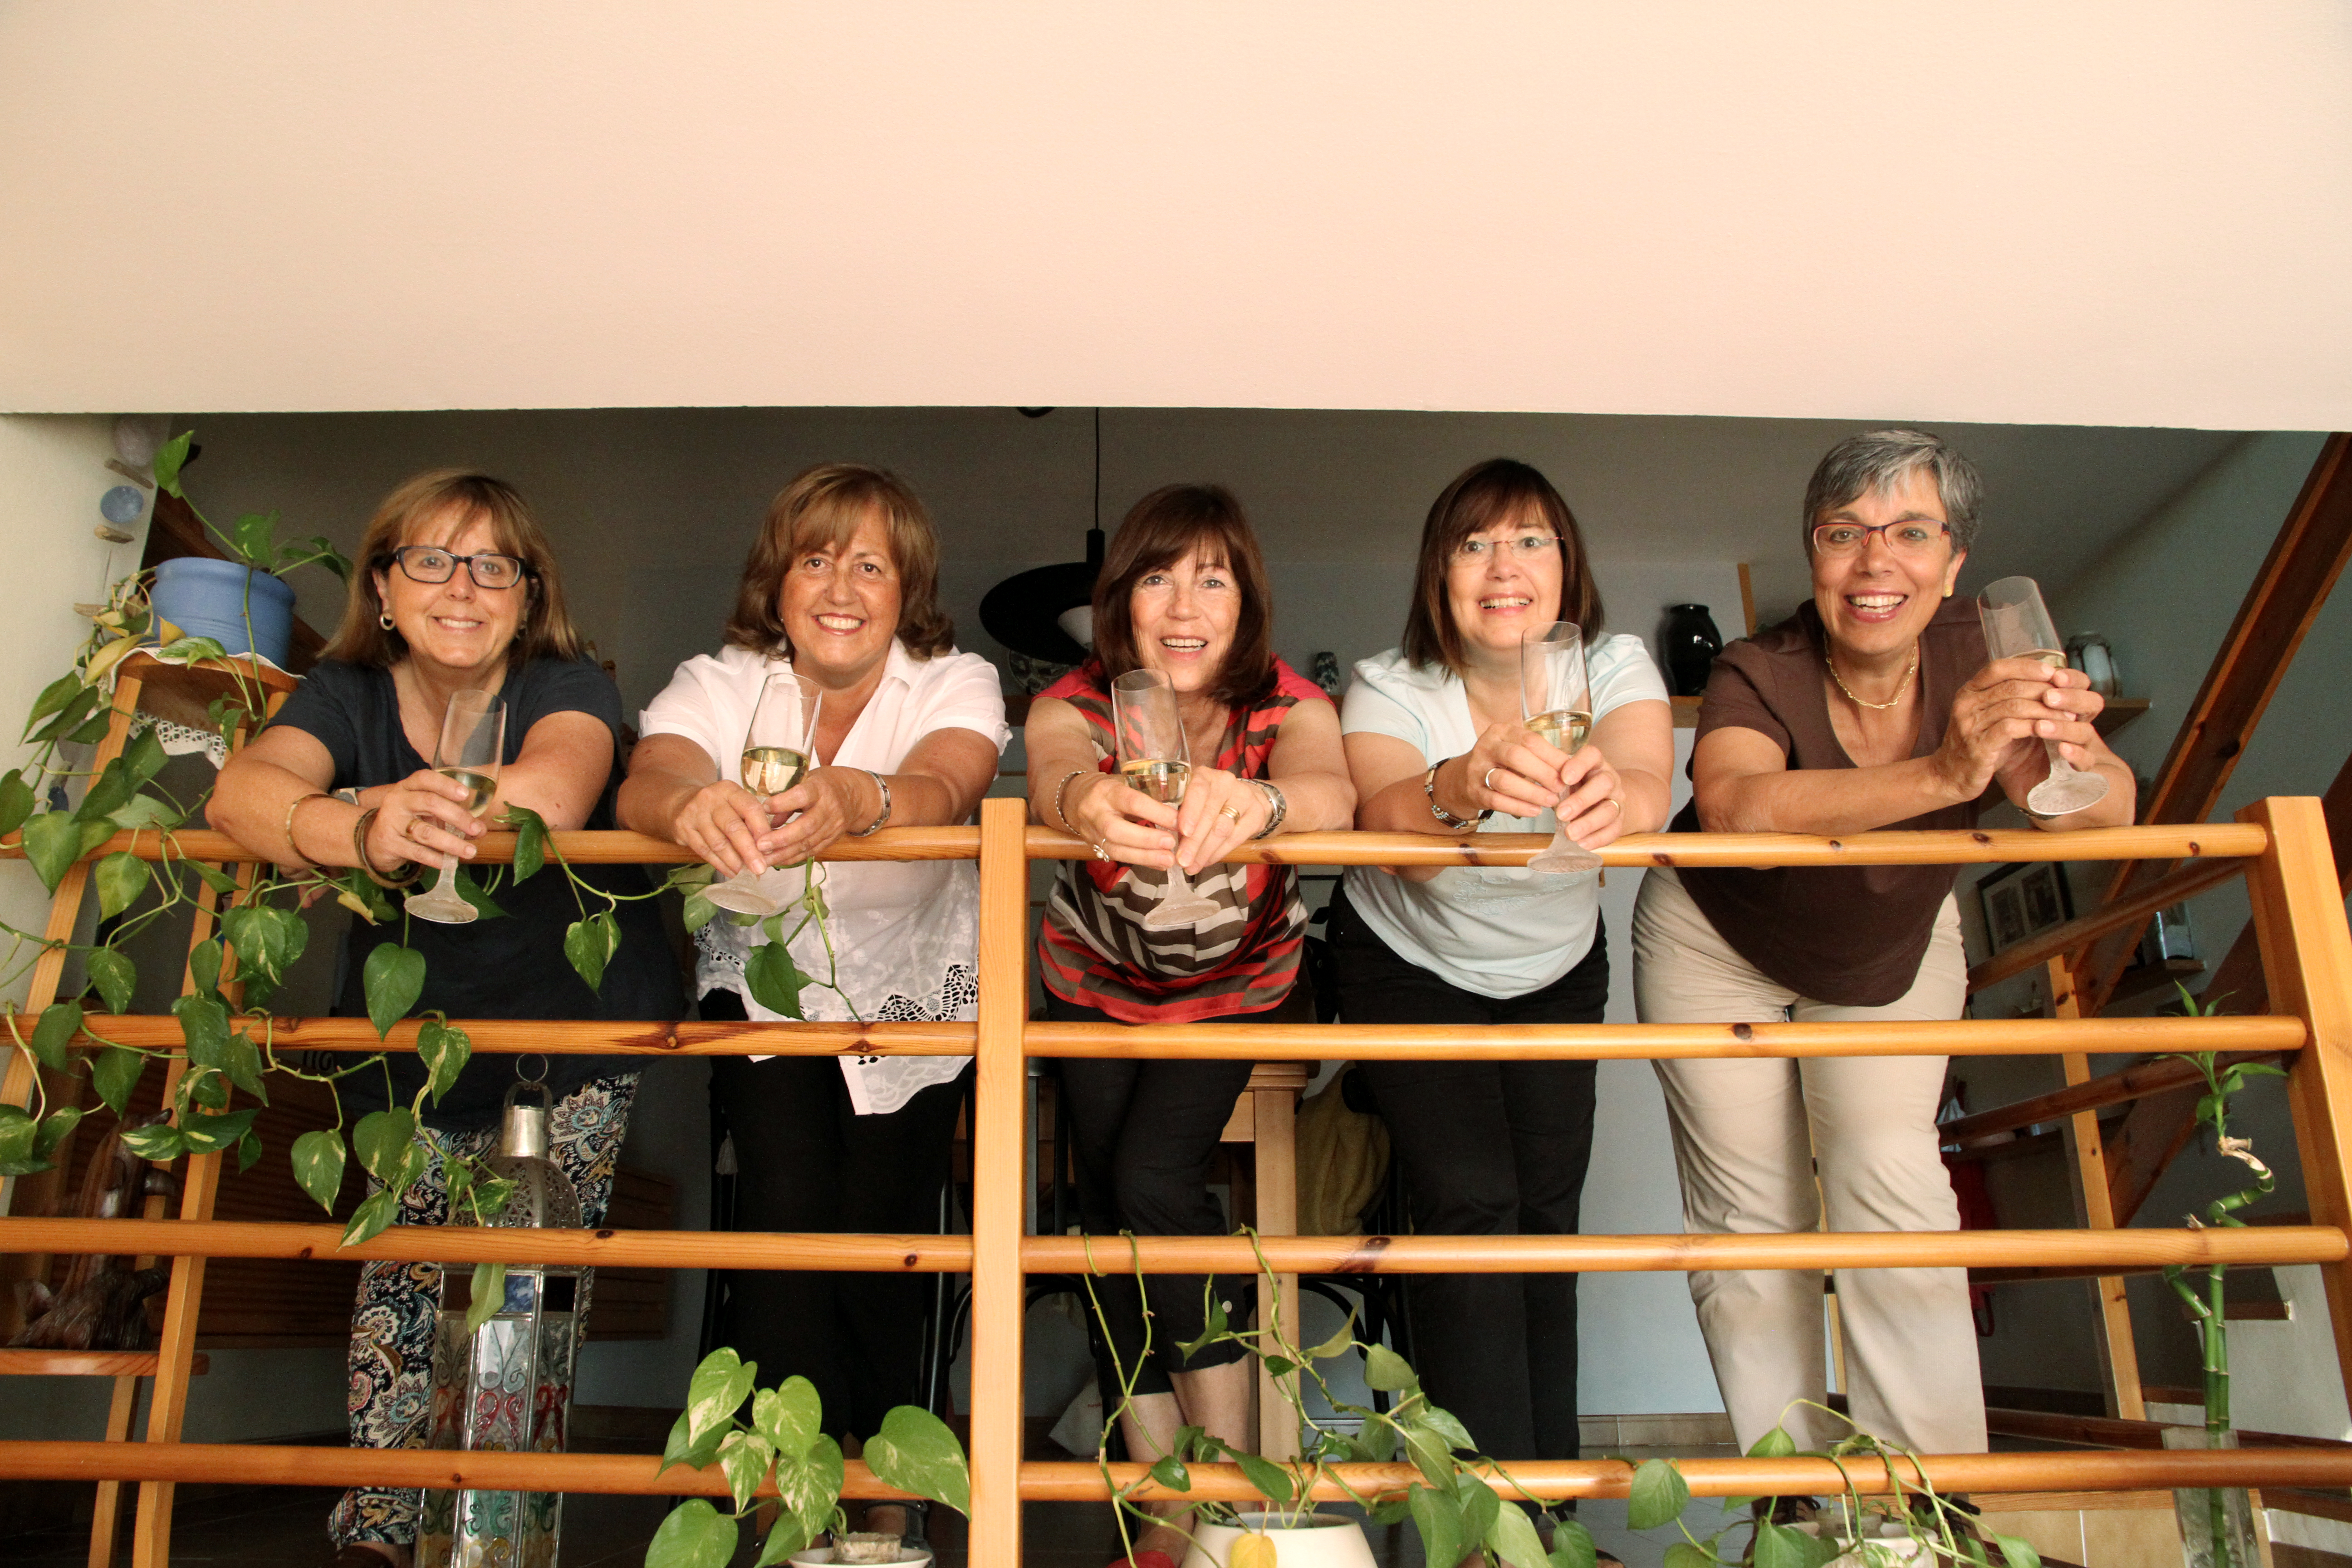 Les pregoneres del 2014, per ordre d'esquerra a dreta: Mª Angels Casals, Neus Bergés, Mª Dolors Millan, Emilia Castellà i Mariona Fradera